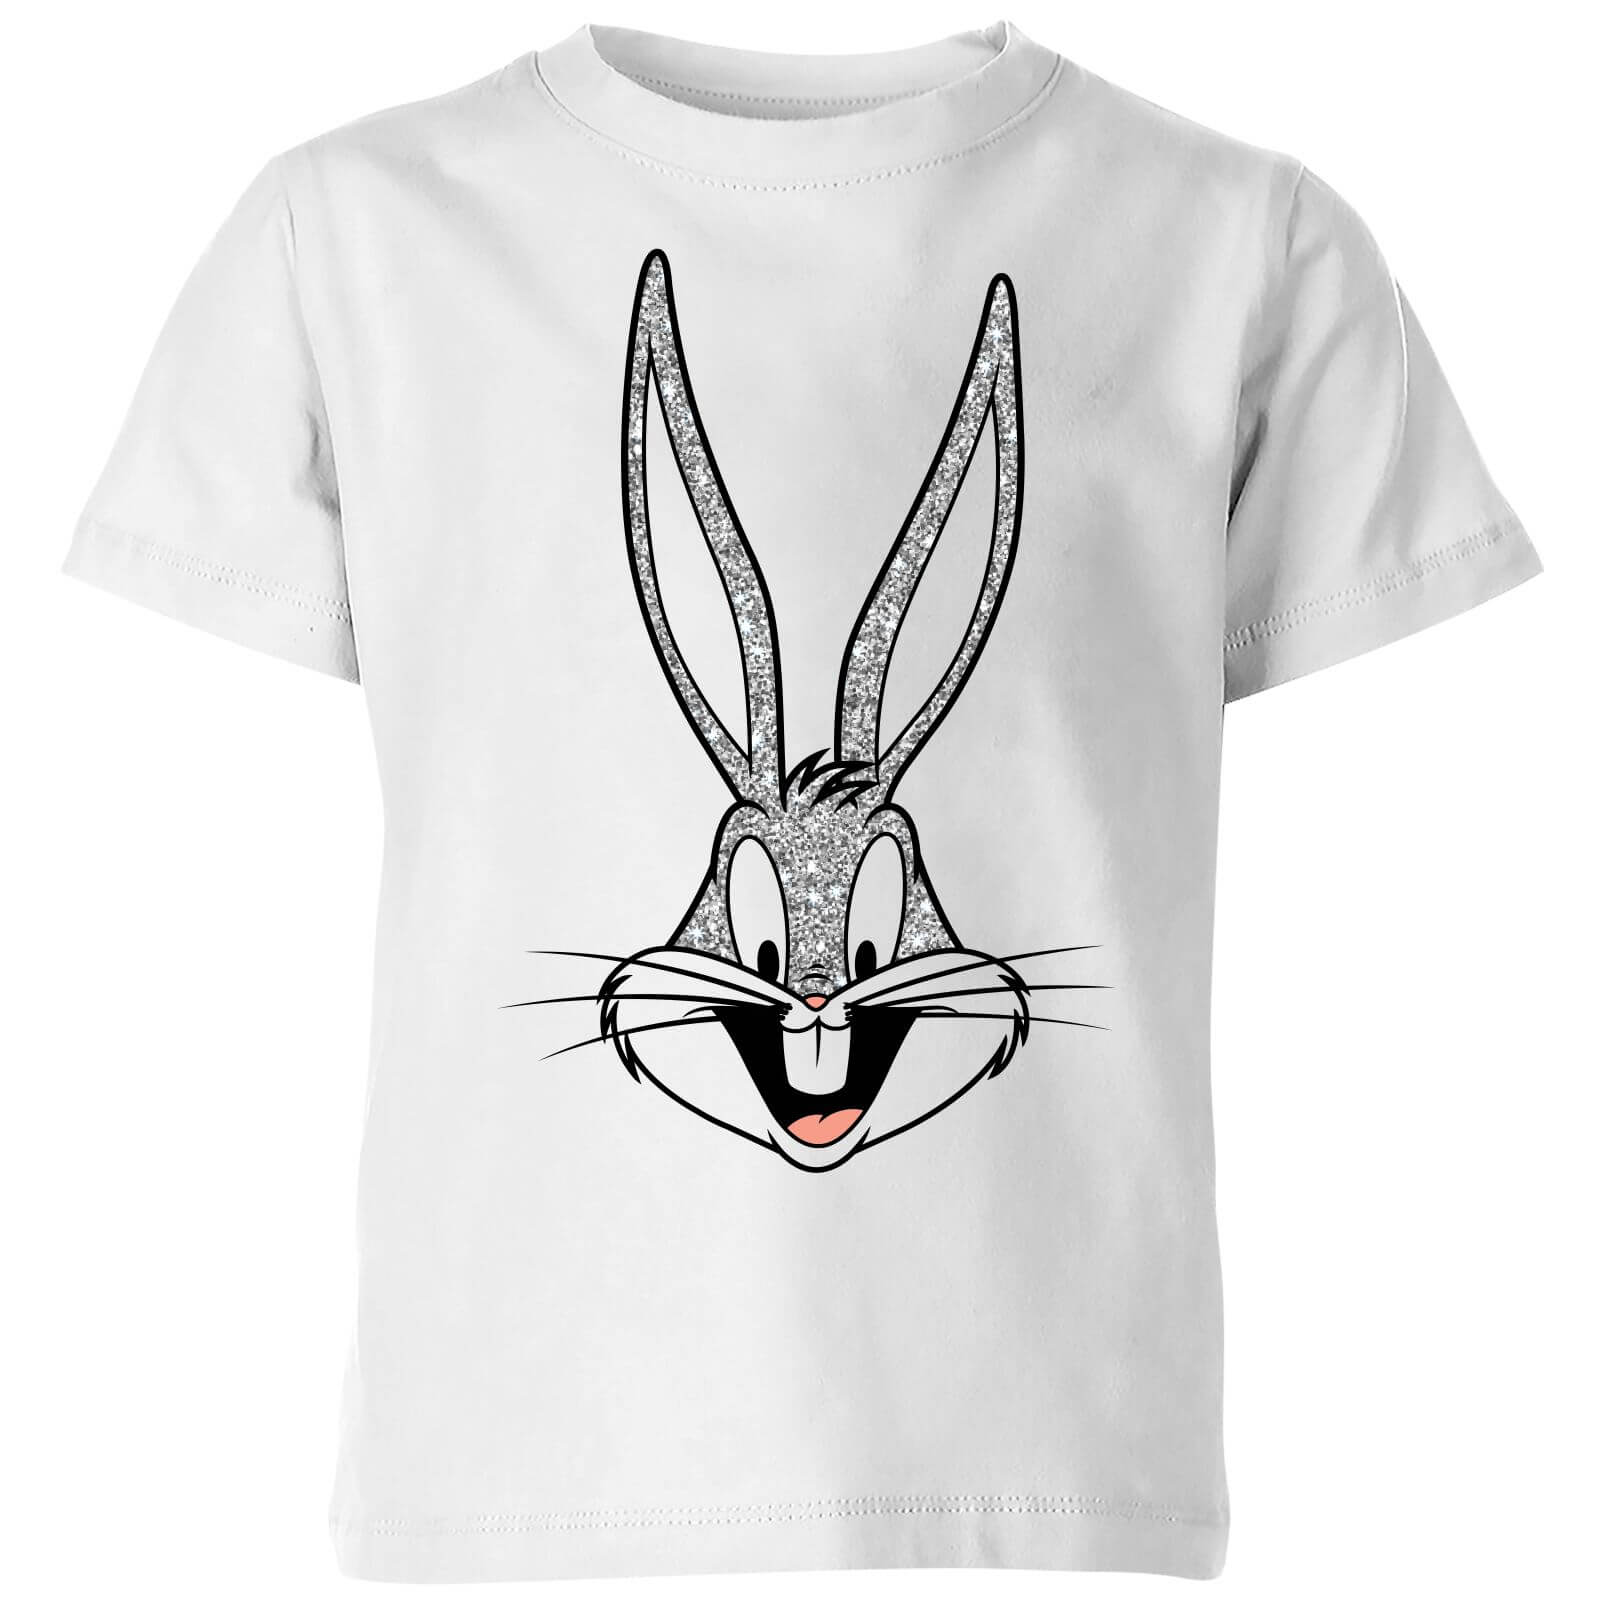 Looney Tunes Bugs Bunny Kids' T-Shirt - White - 11-12 Years - White